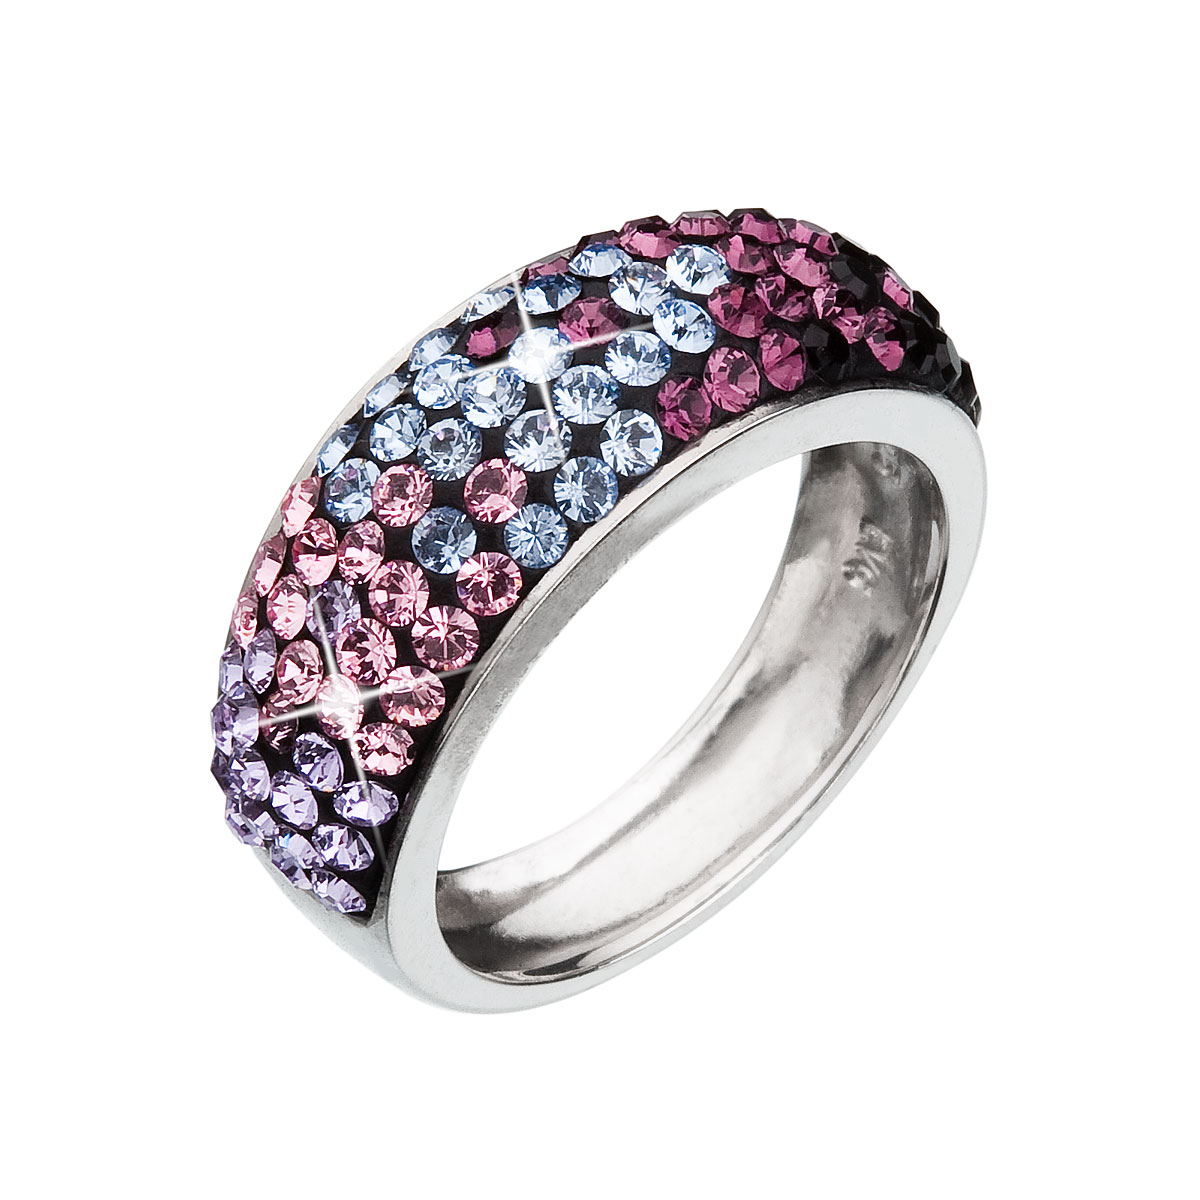 Evolution Group Stříbrný prsten s krystaly Swarovski mix barev fialová 35027.3